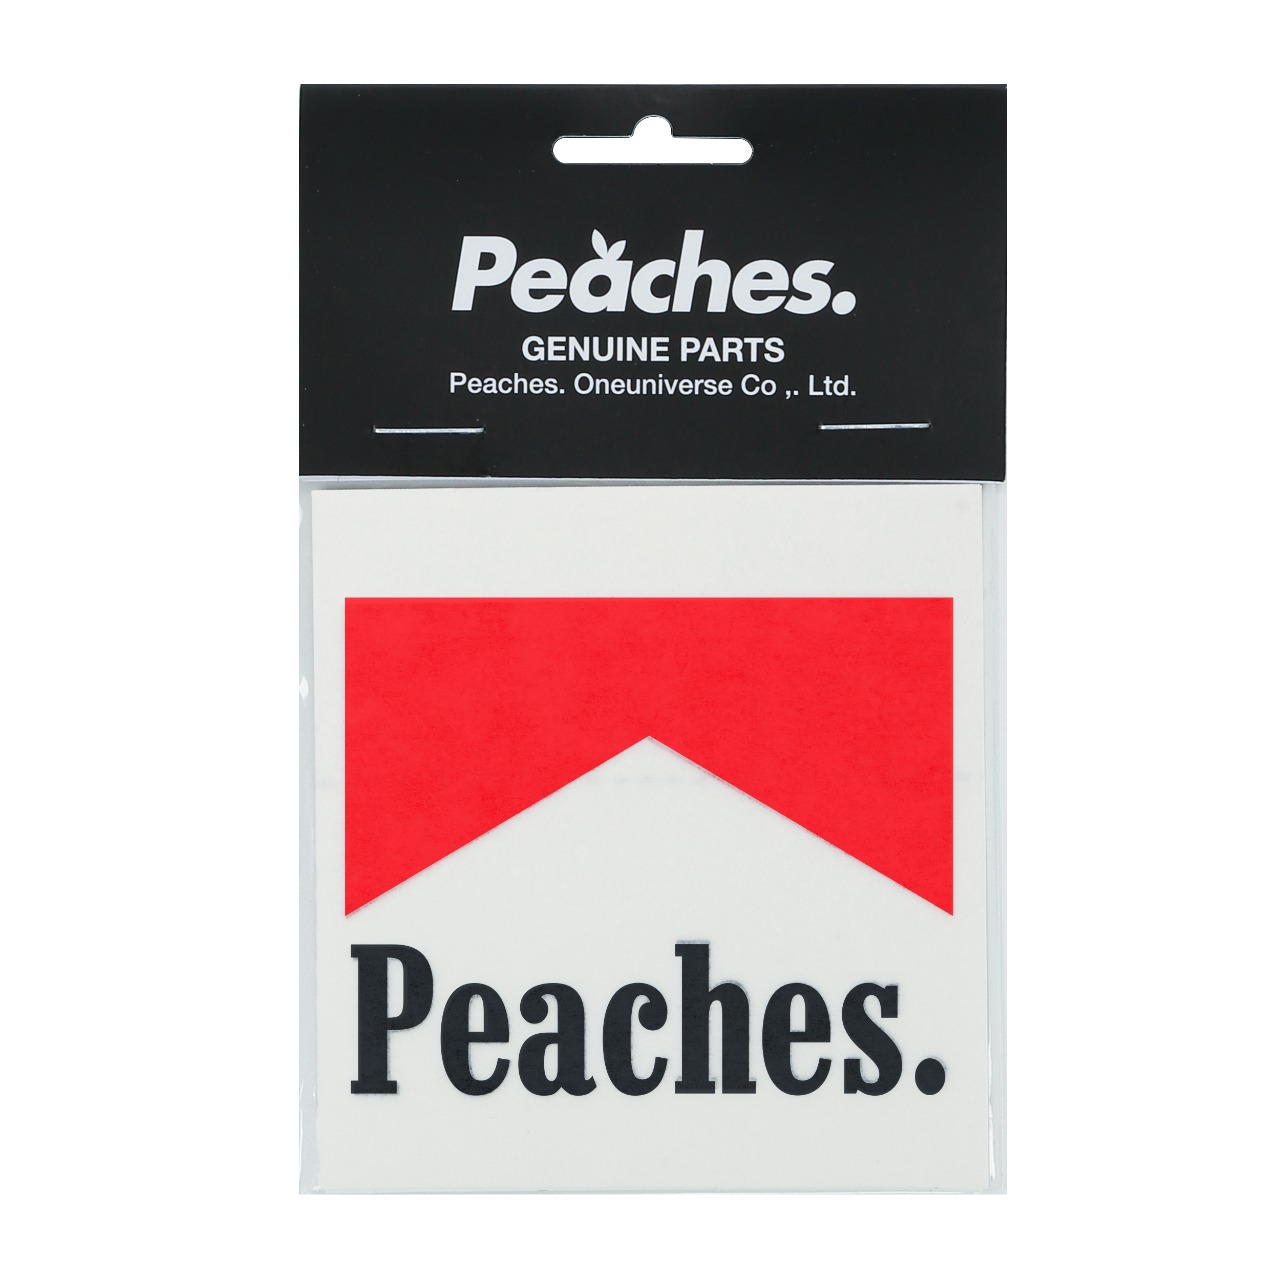 Peaches. Heals Decal Black